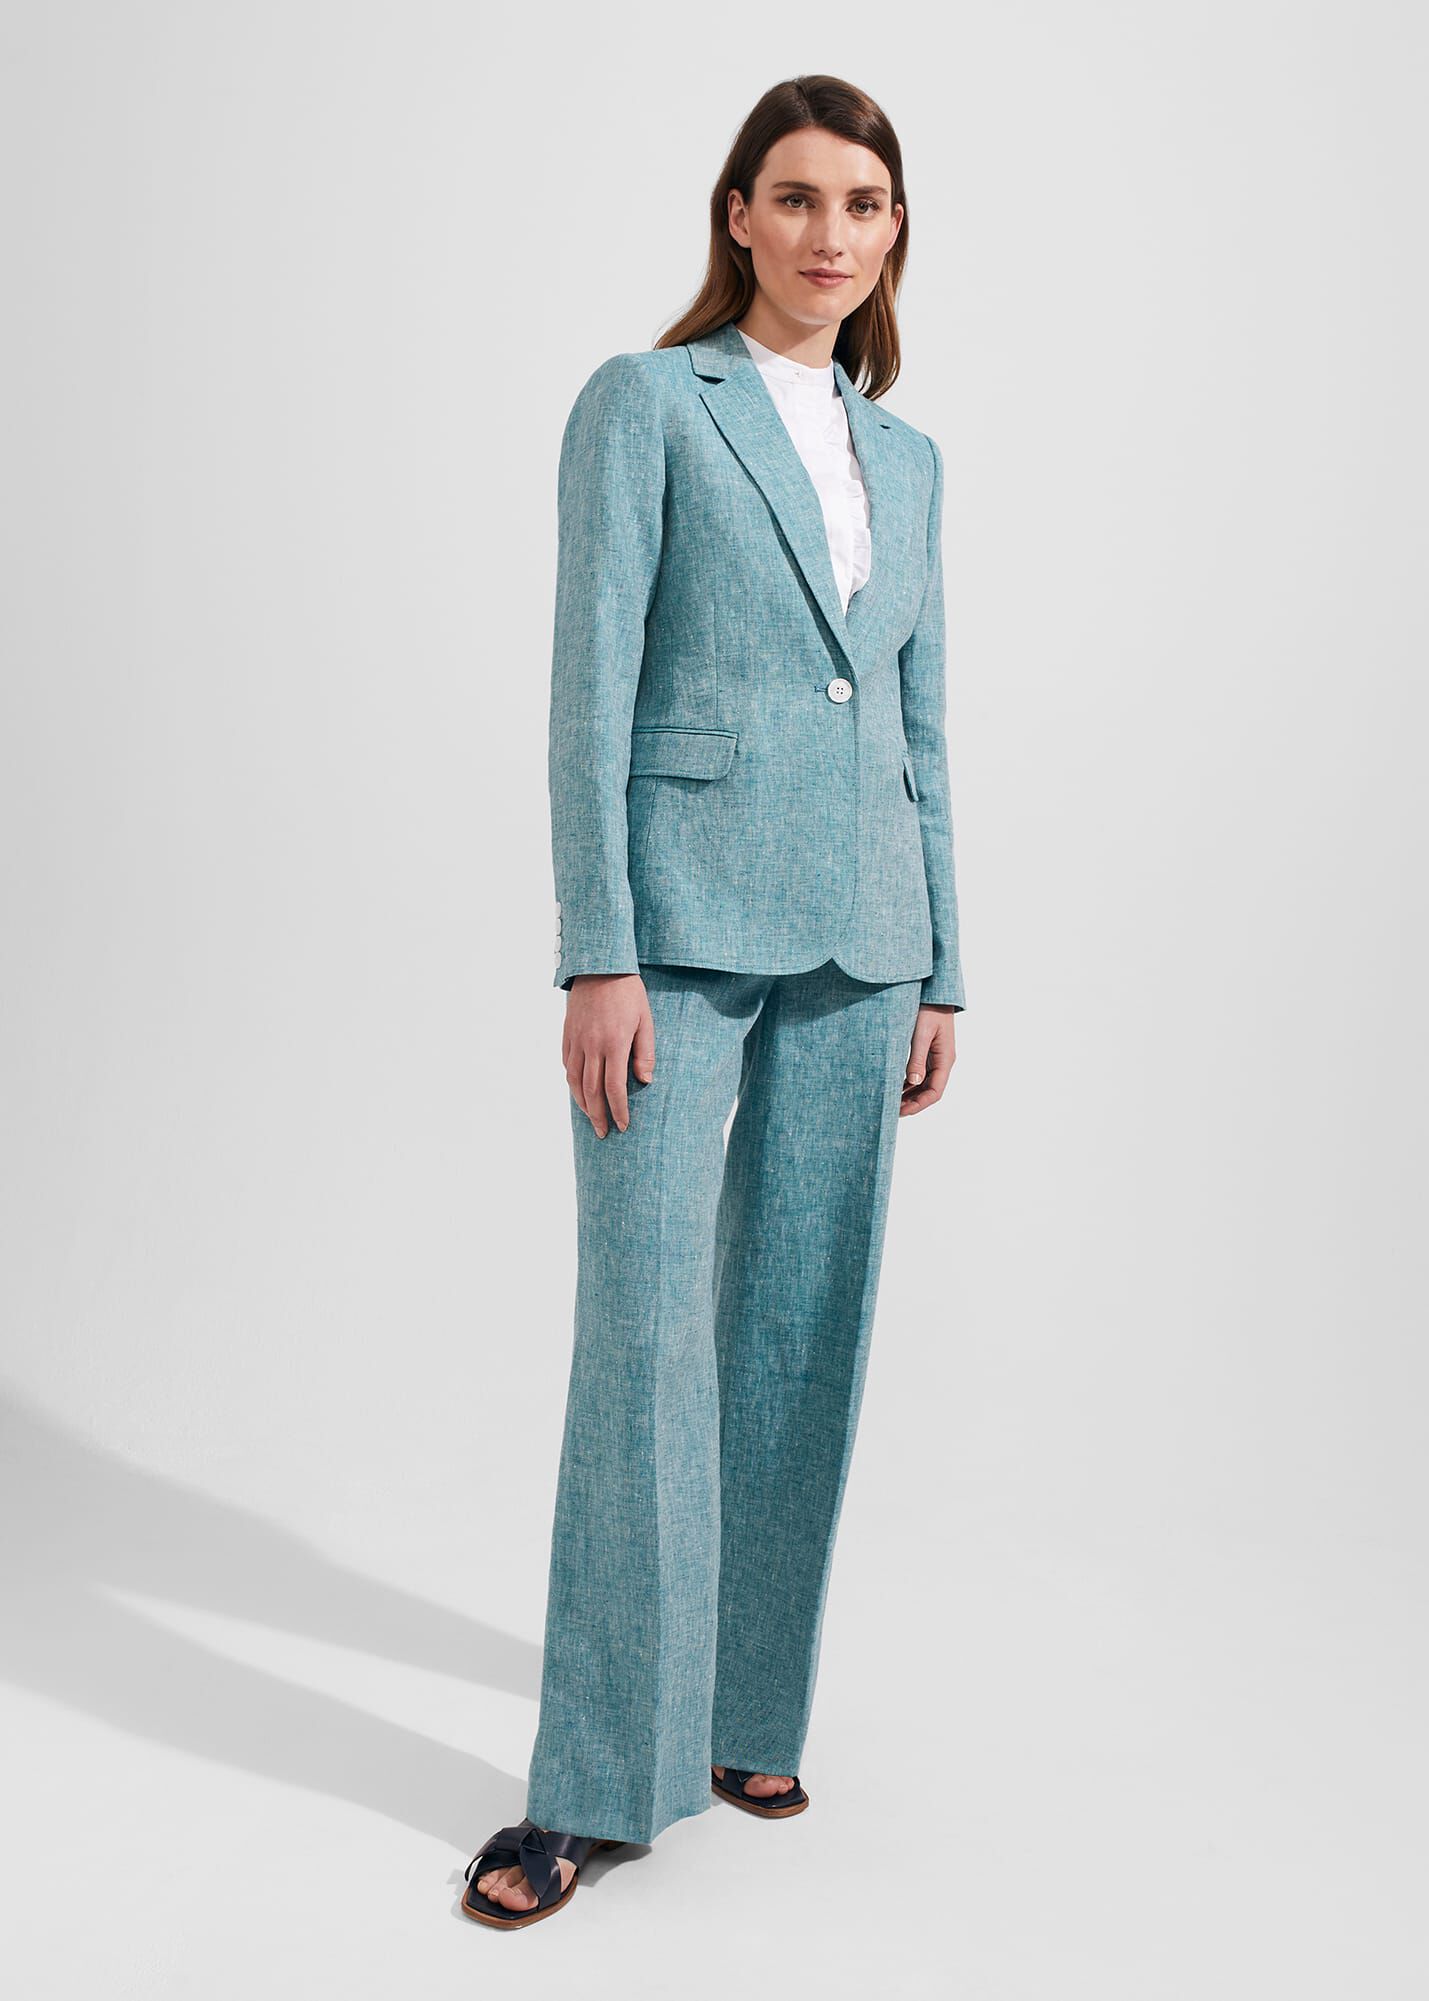 Floaty Trouser Suits For Weddings  Karen Millen UK